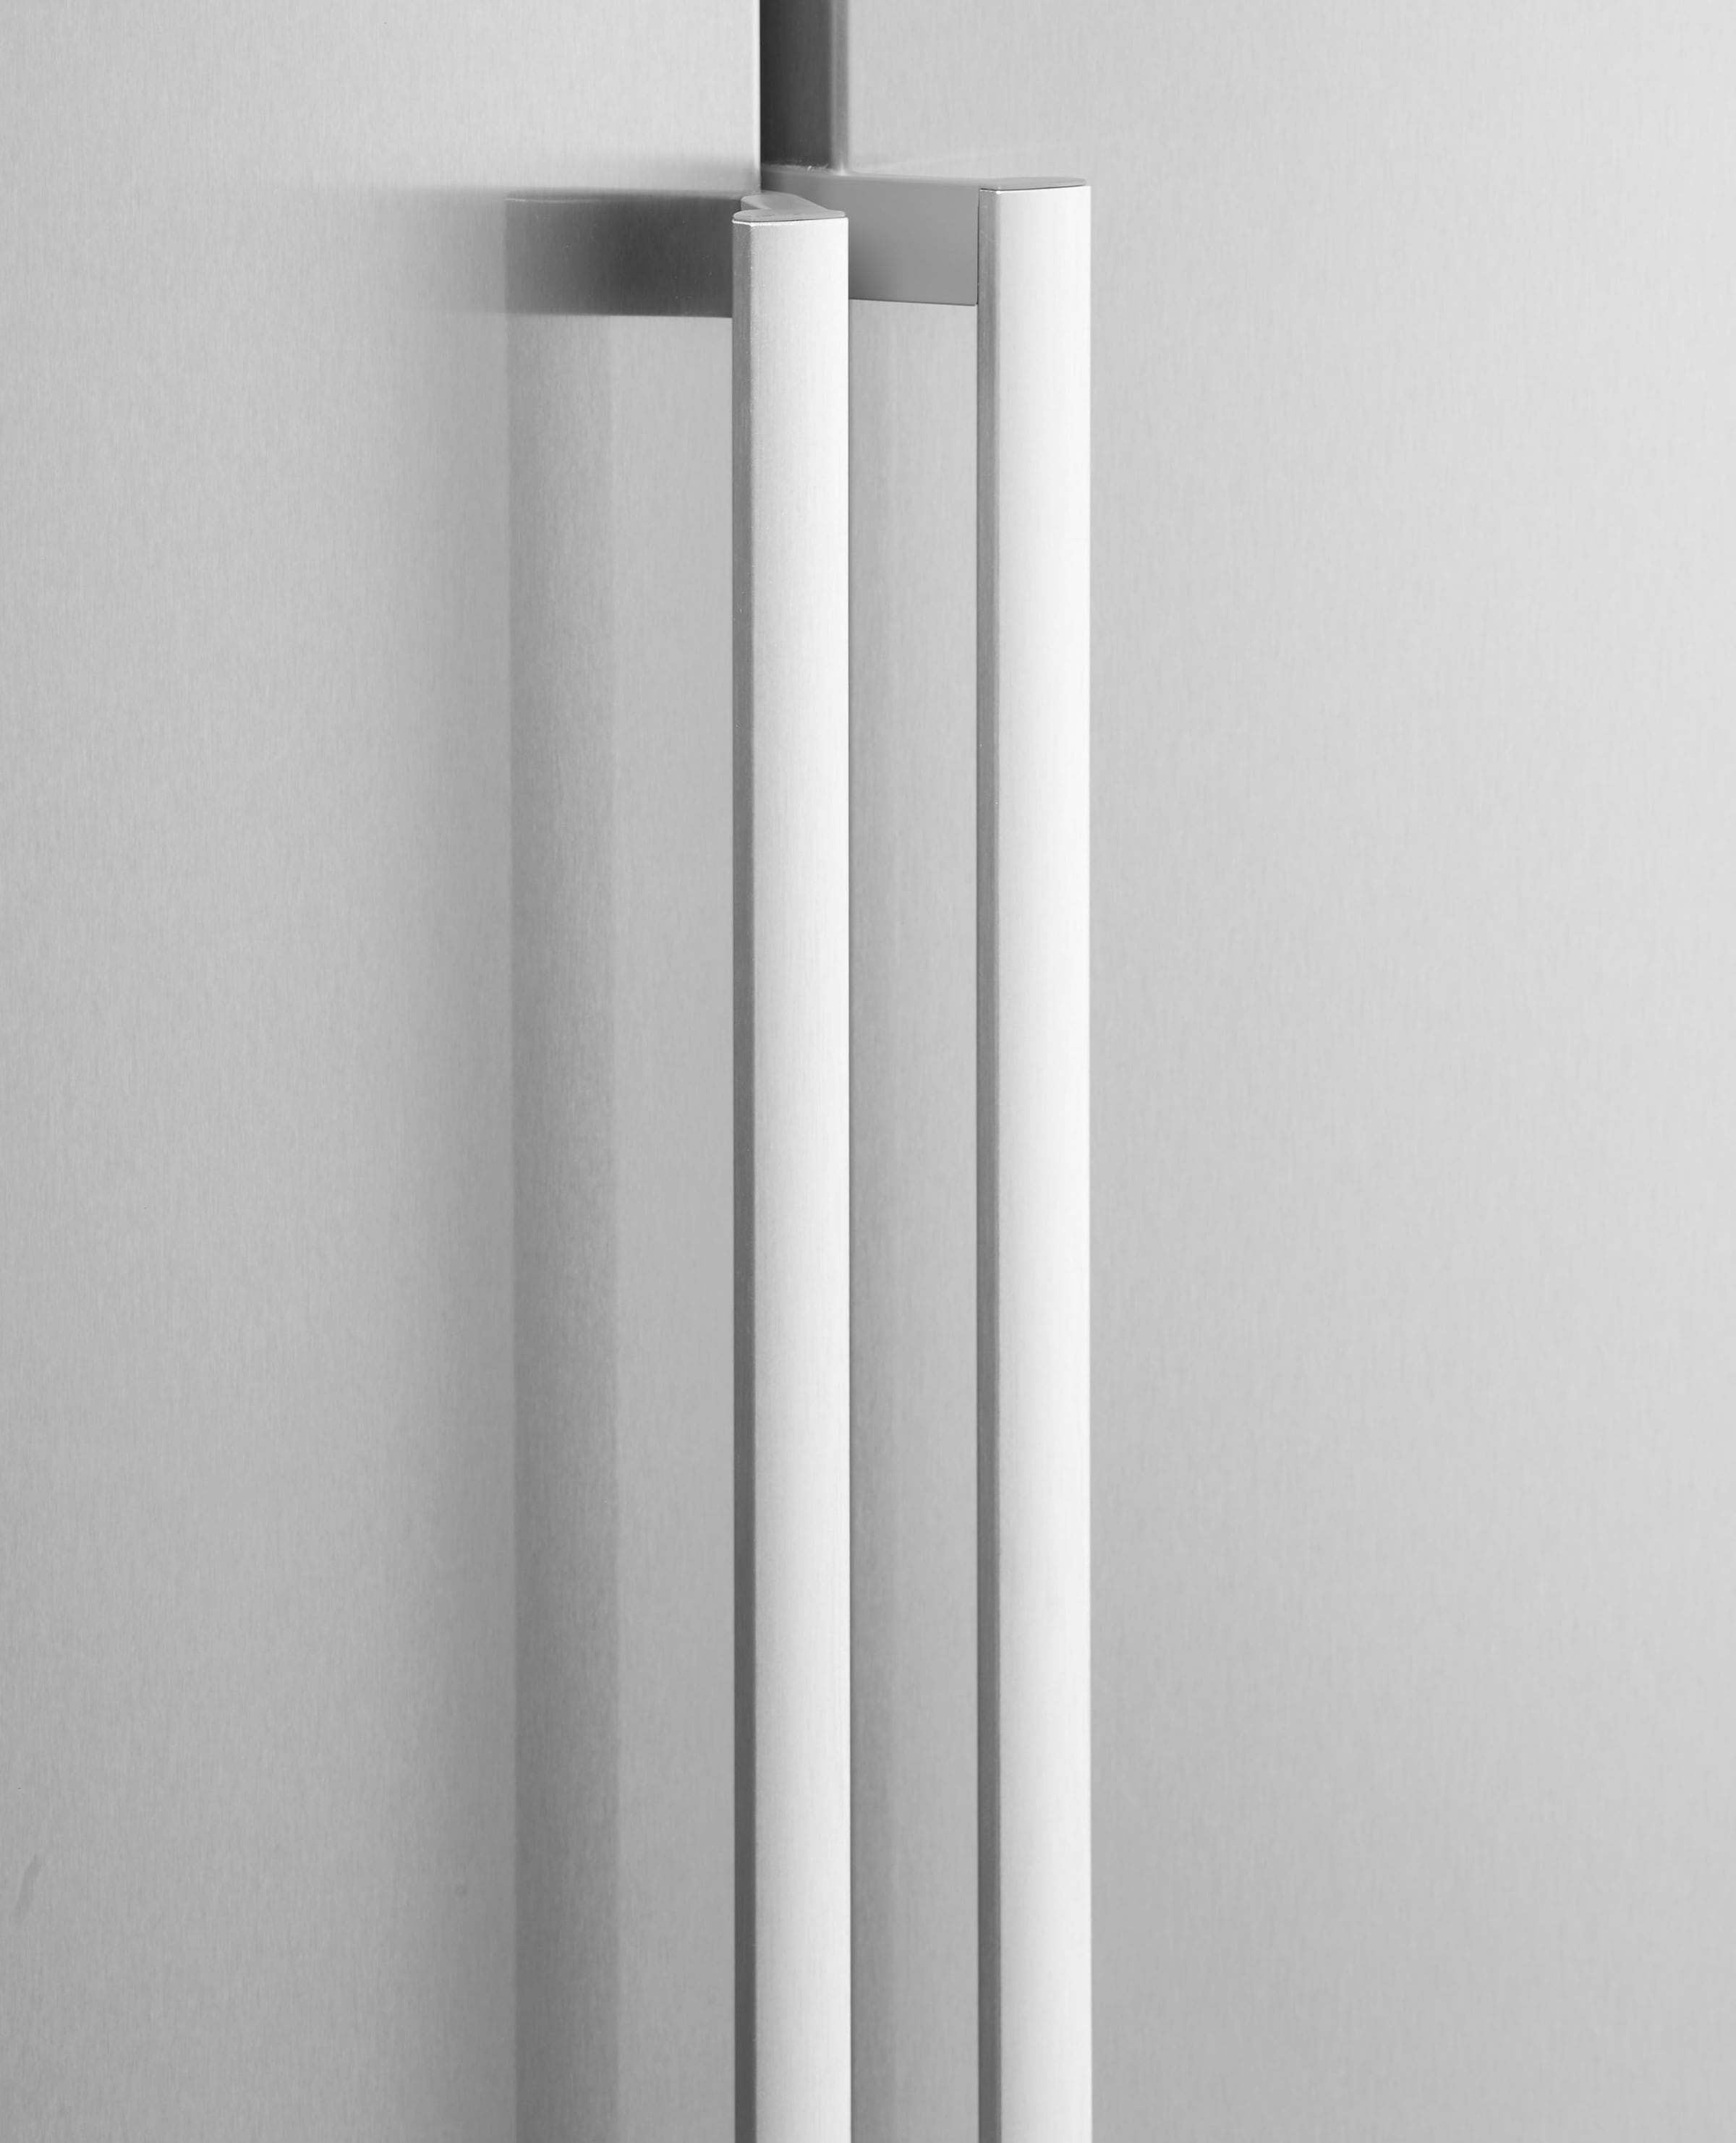 BOSCH European Side-by-Side »KAF95PIEP«, 186 cm hoch, 120 cm breit